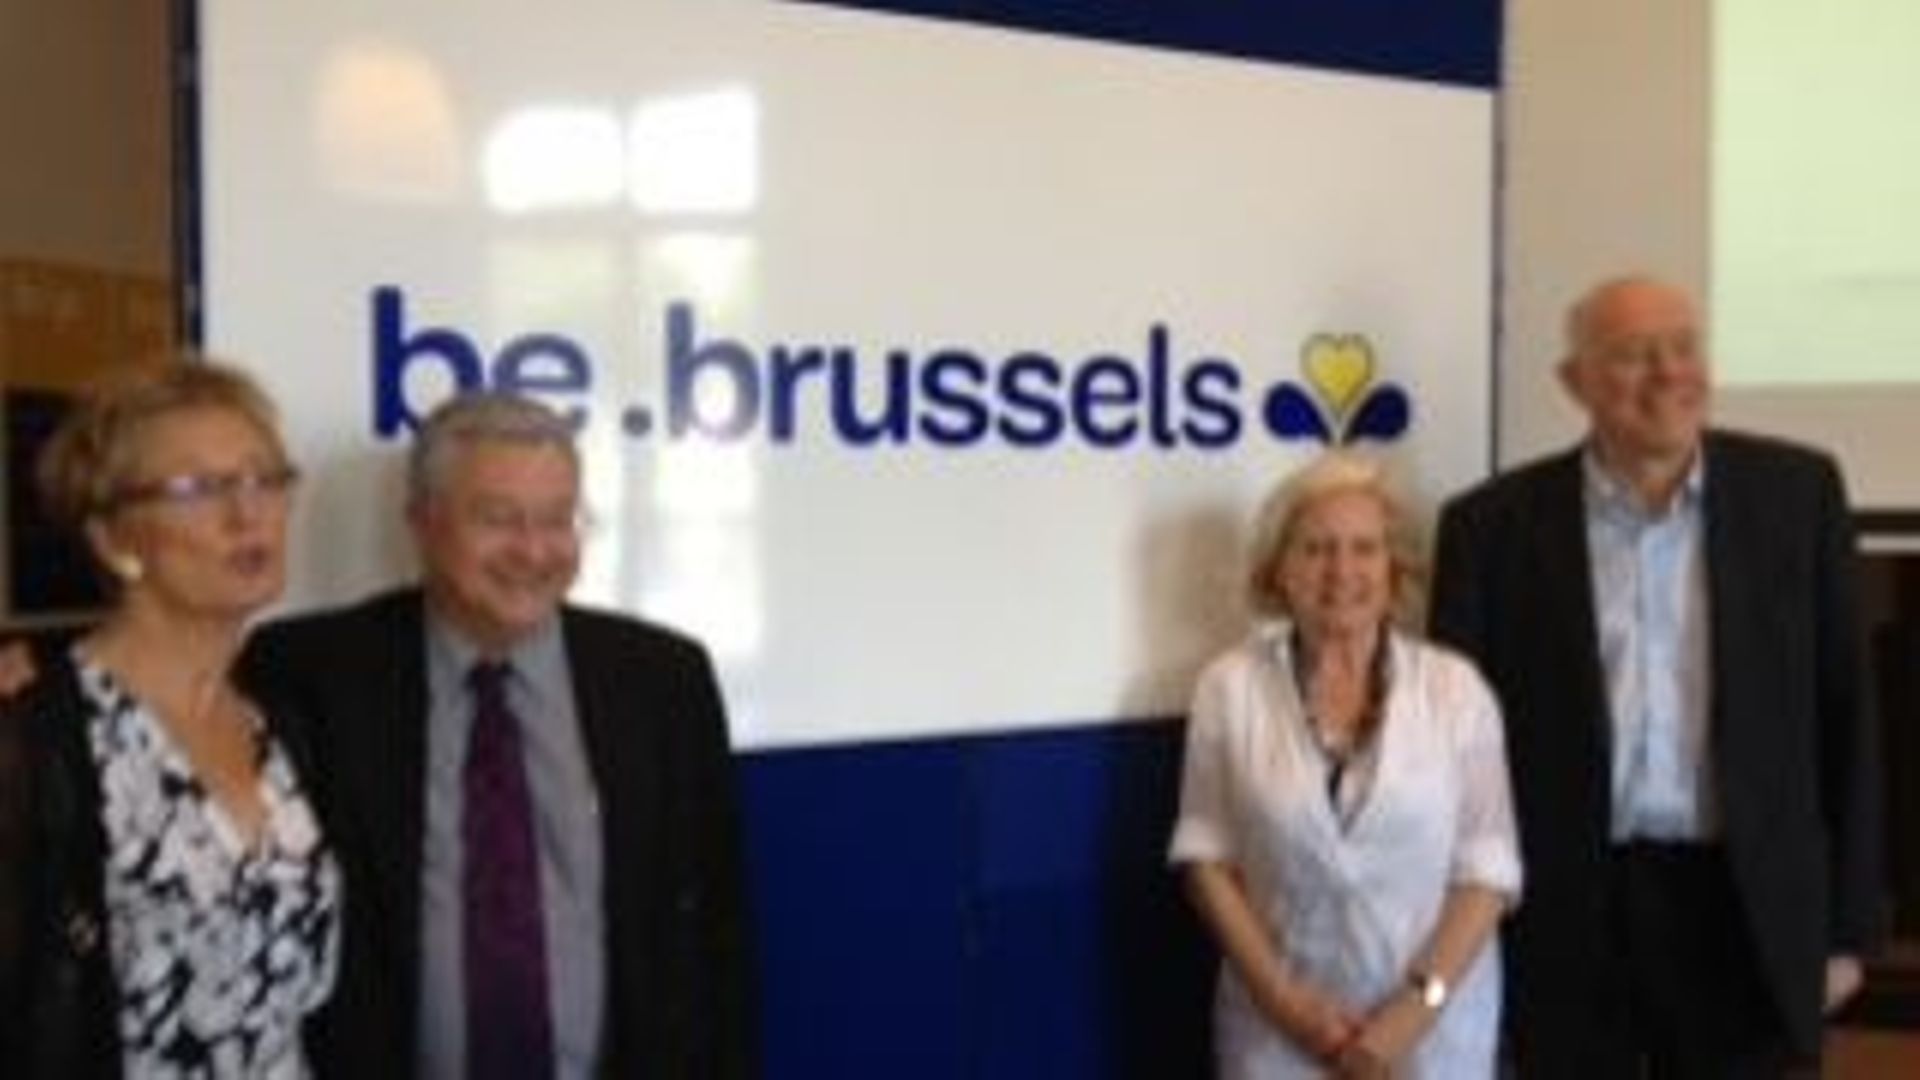 Be.brussels, le nouveau logo de la Région bruxelloise